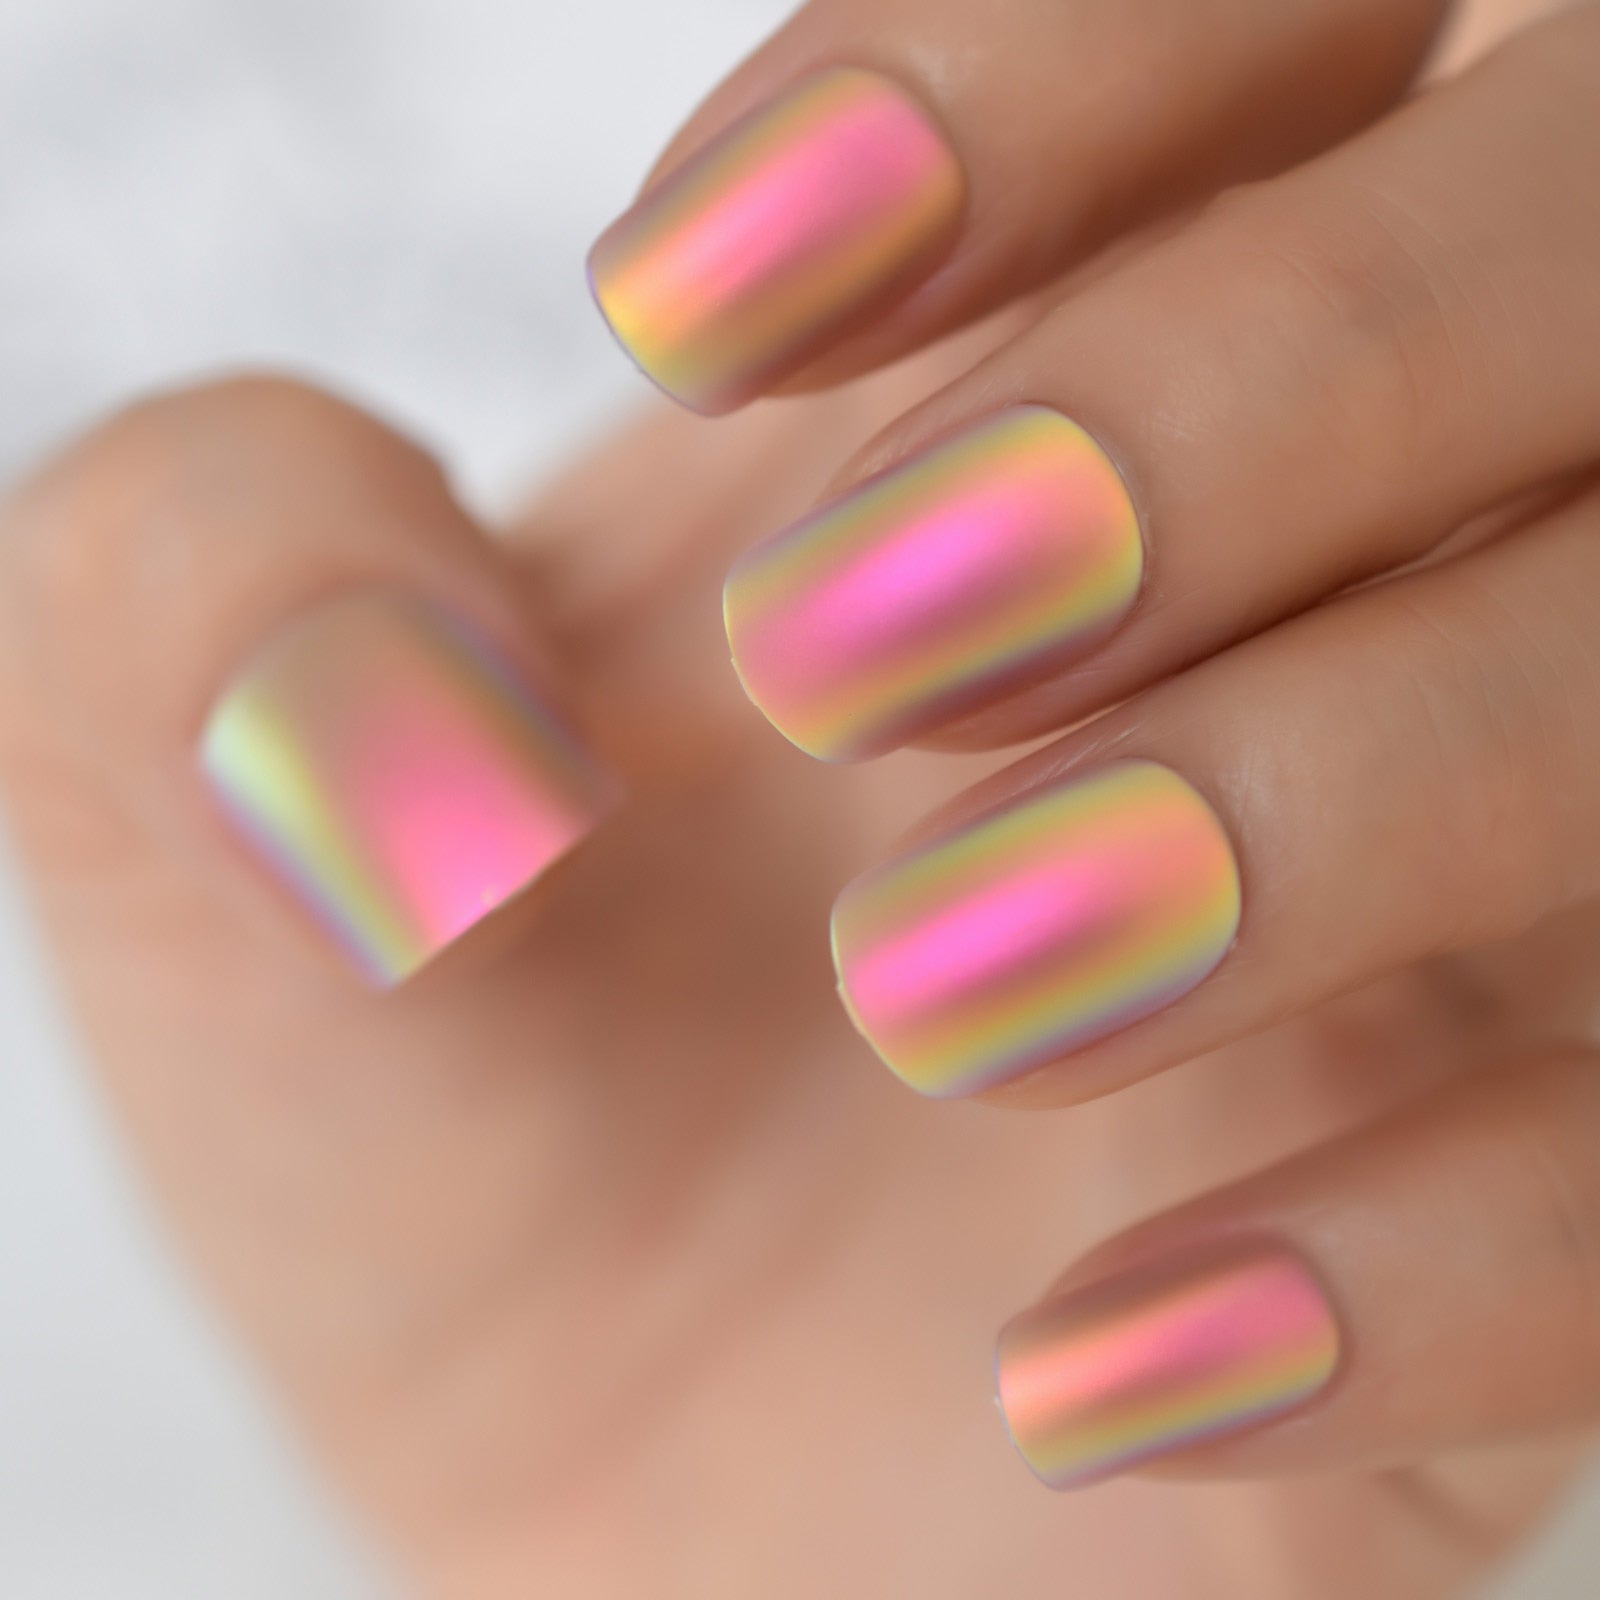 Croit Matte Metallic Press on Nails Holographic Multi Color Shiny Squavol Faux Nails Faux Nails Art Fingernails Manucure Conseils